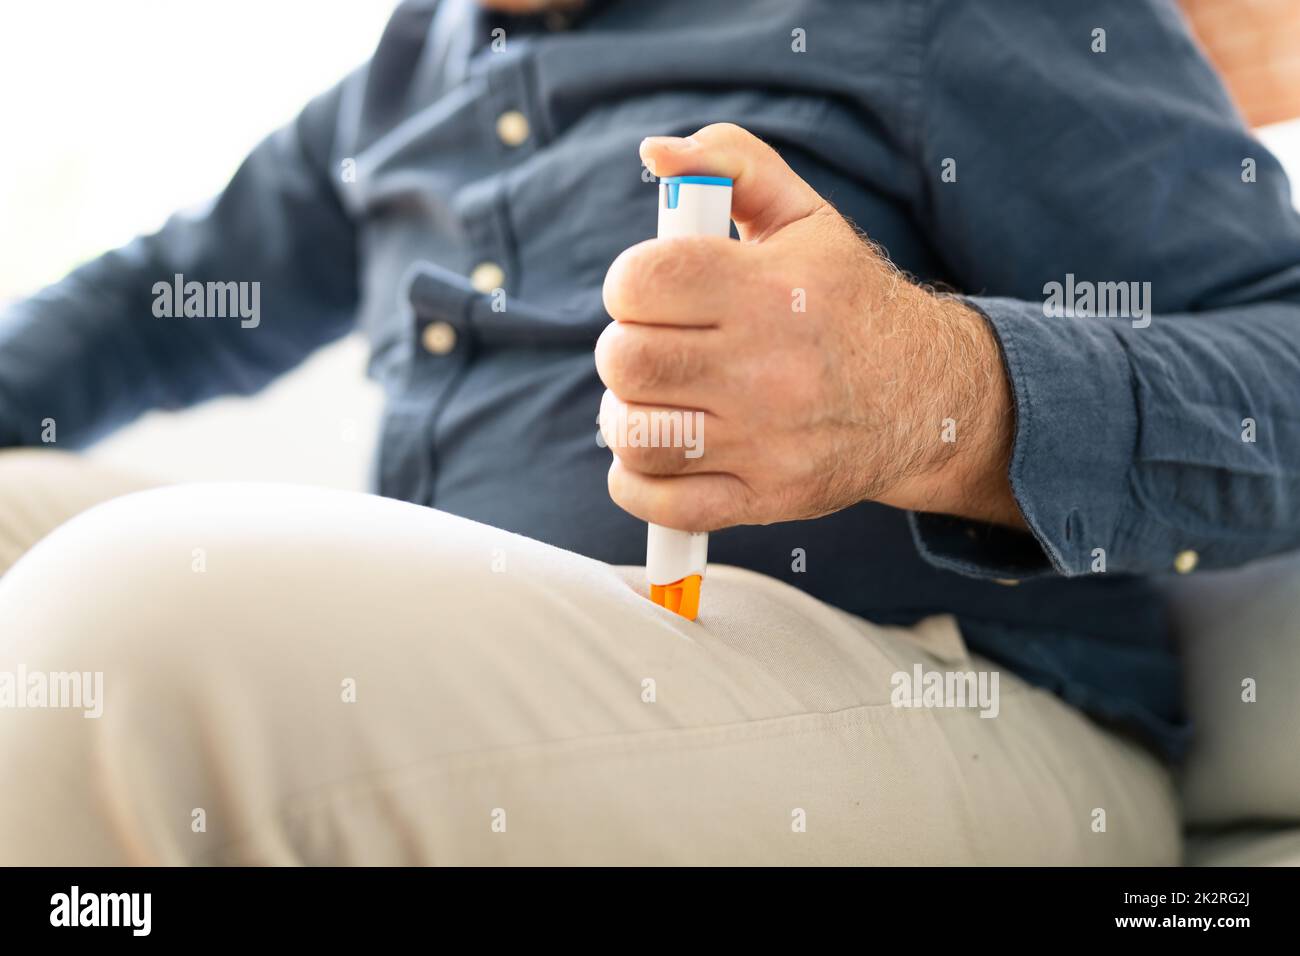 Homme injectant de l'épinéphrine à l'aide d'une seringue à auto-injecteur Banque D'Images